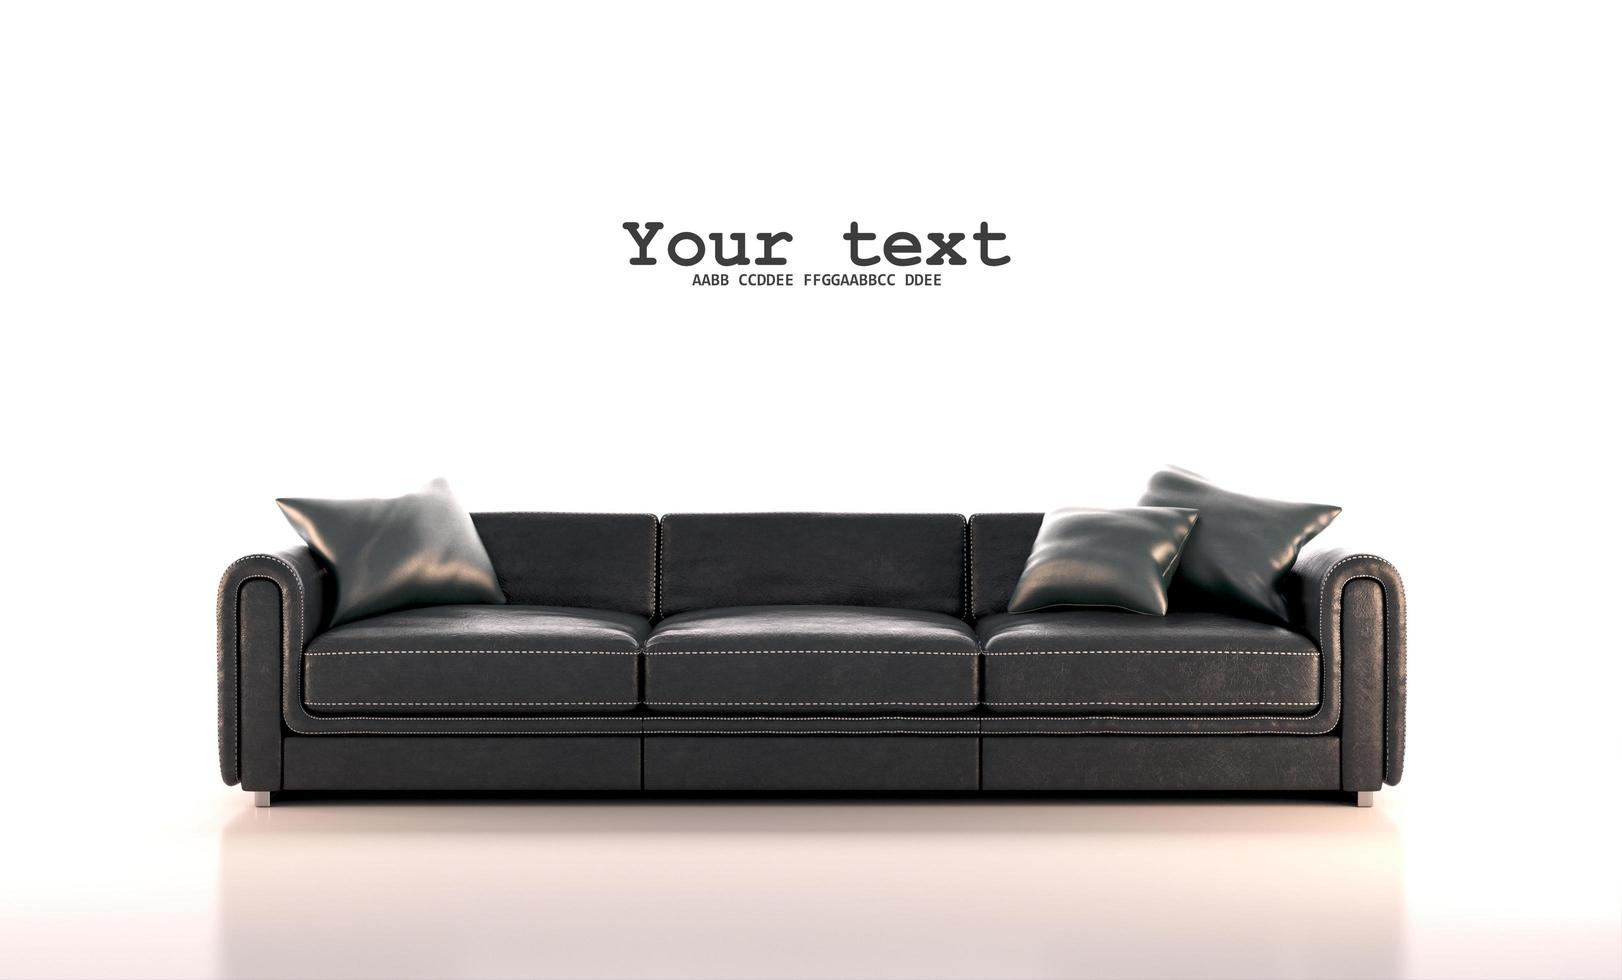 vista frontale del divano e dei cuscini in pelle nera su sfondo bianco.stile classico moderno.rendering 3d foto